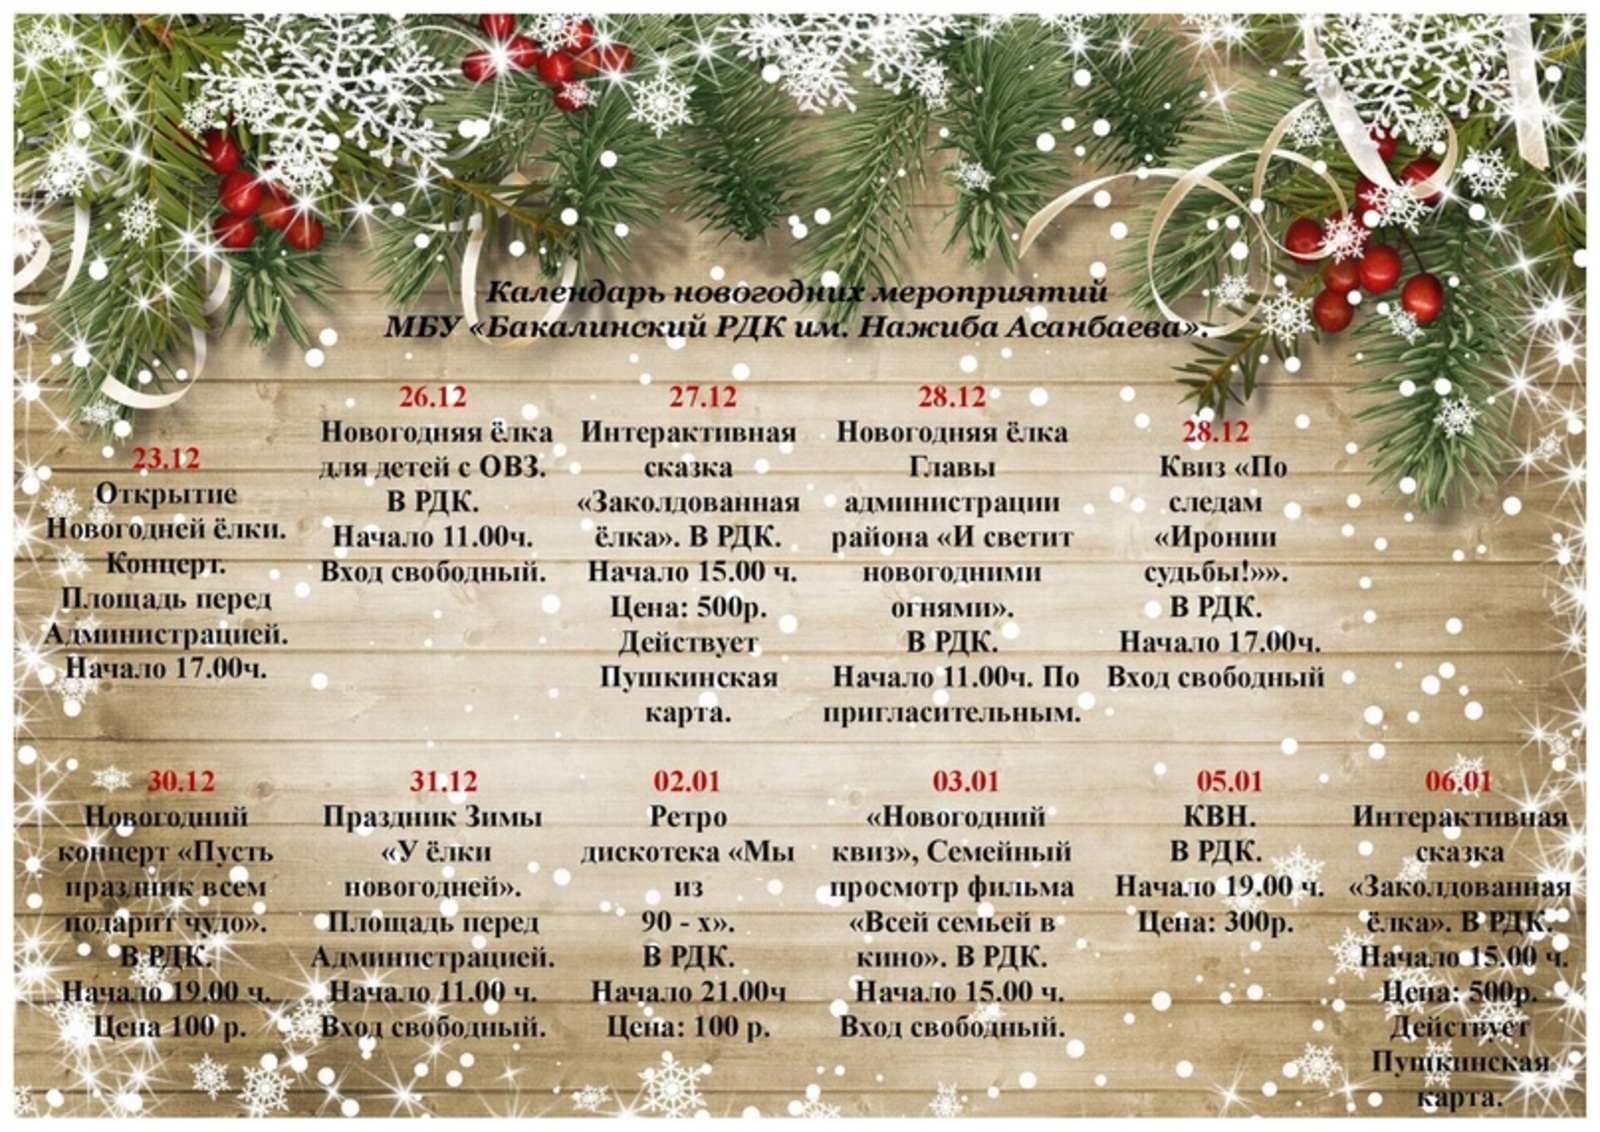 Календарь предновогодних и новогодних мероприятий